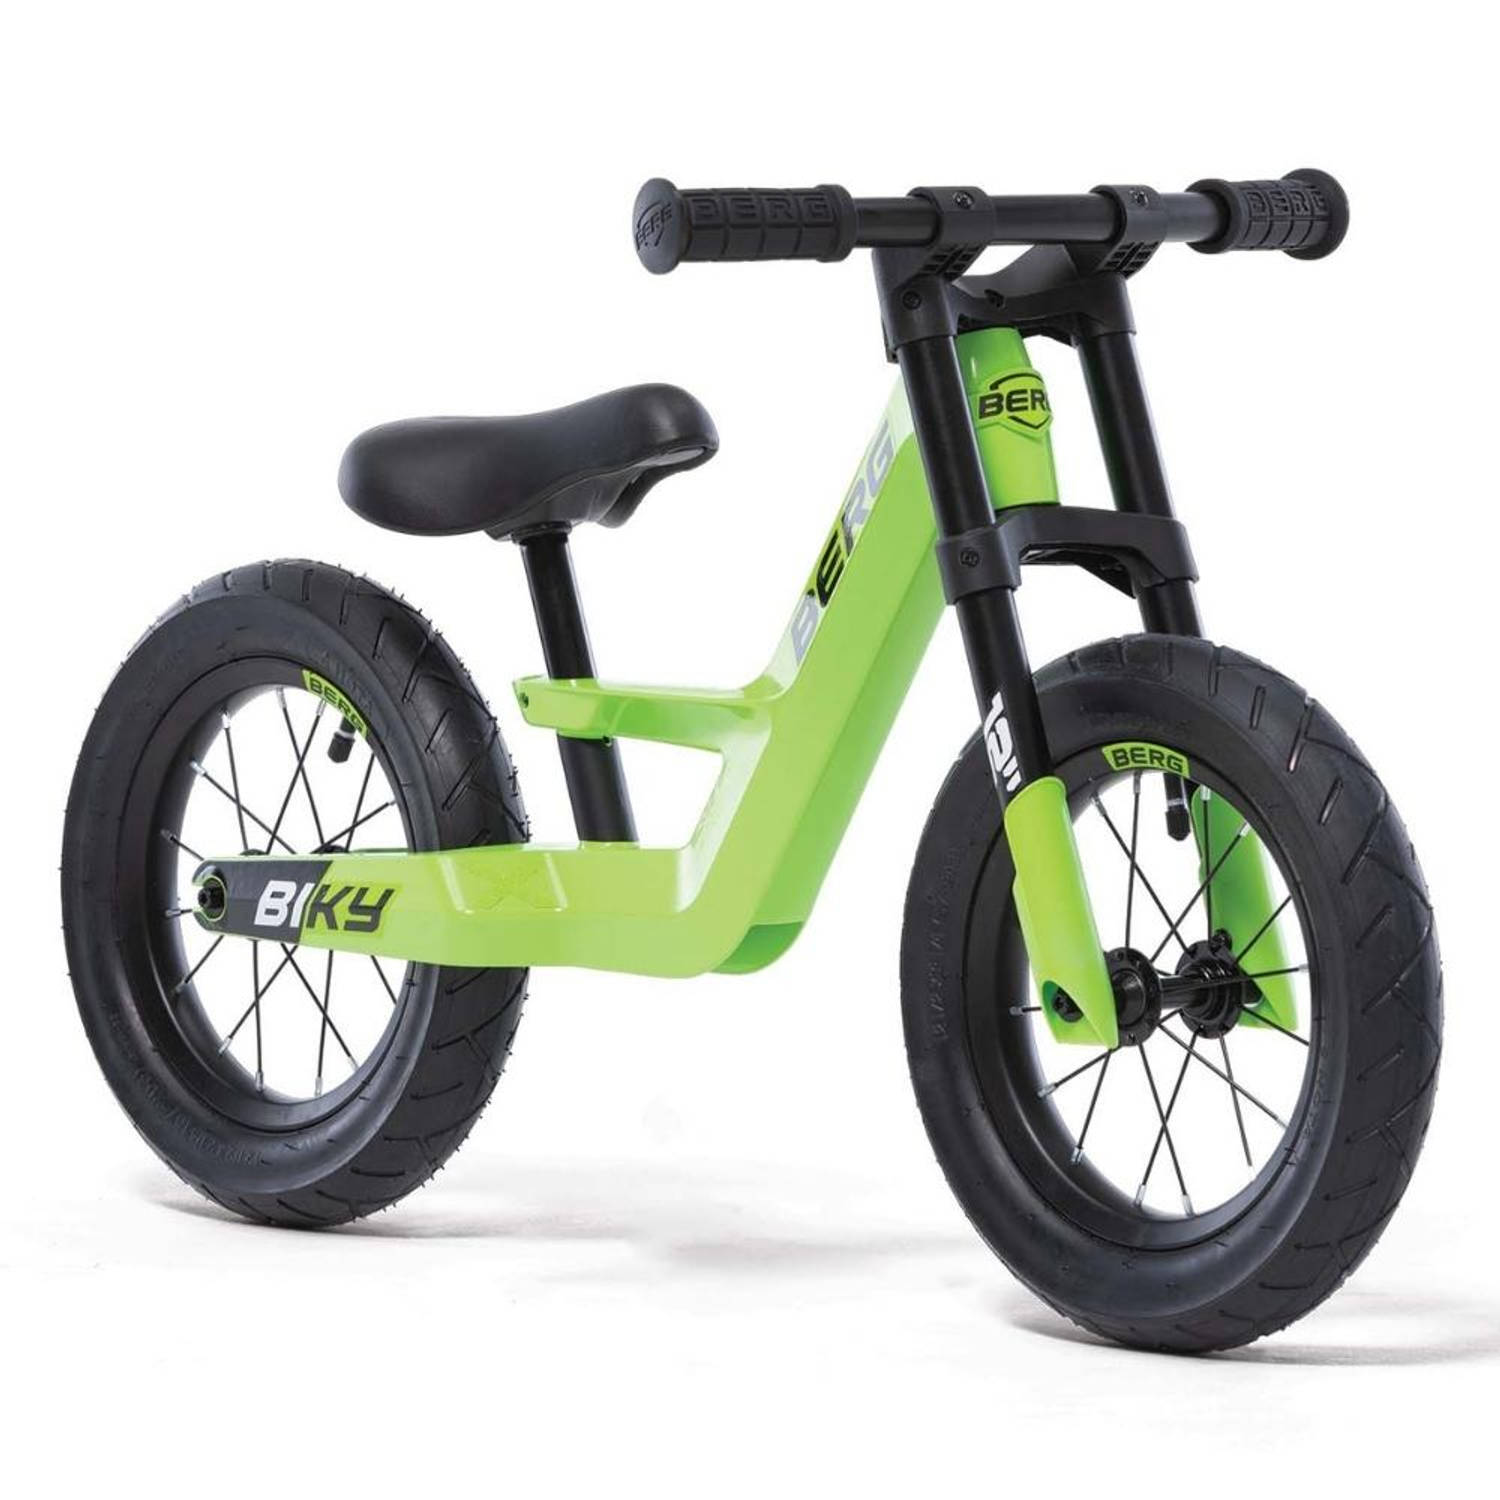 BERG Biky City Loopfiets - Groen - Lichtgewicht frame van magnesium - 2 tot 5 jaar